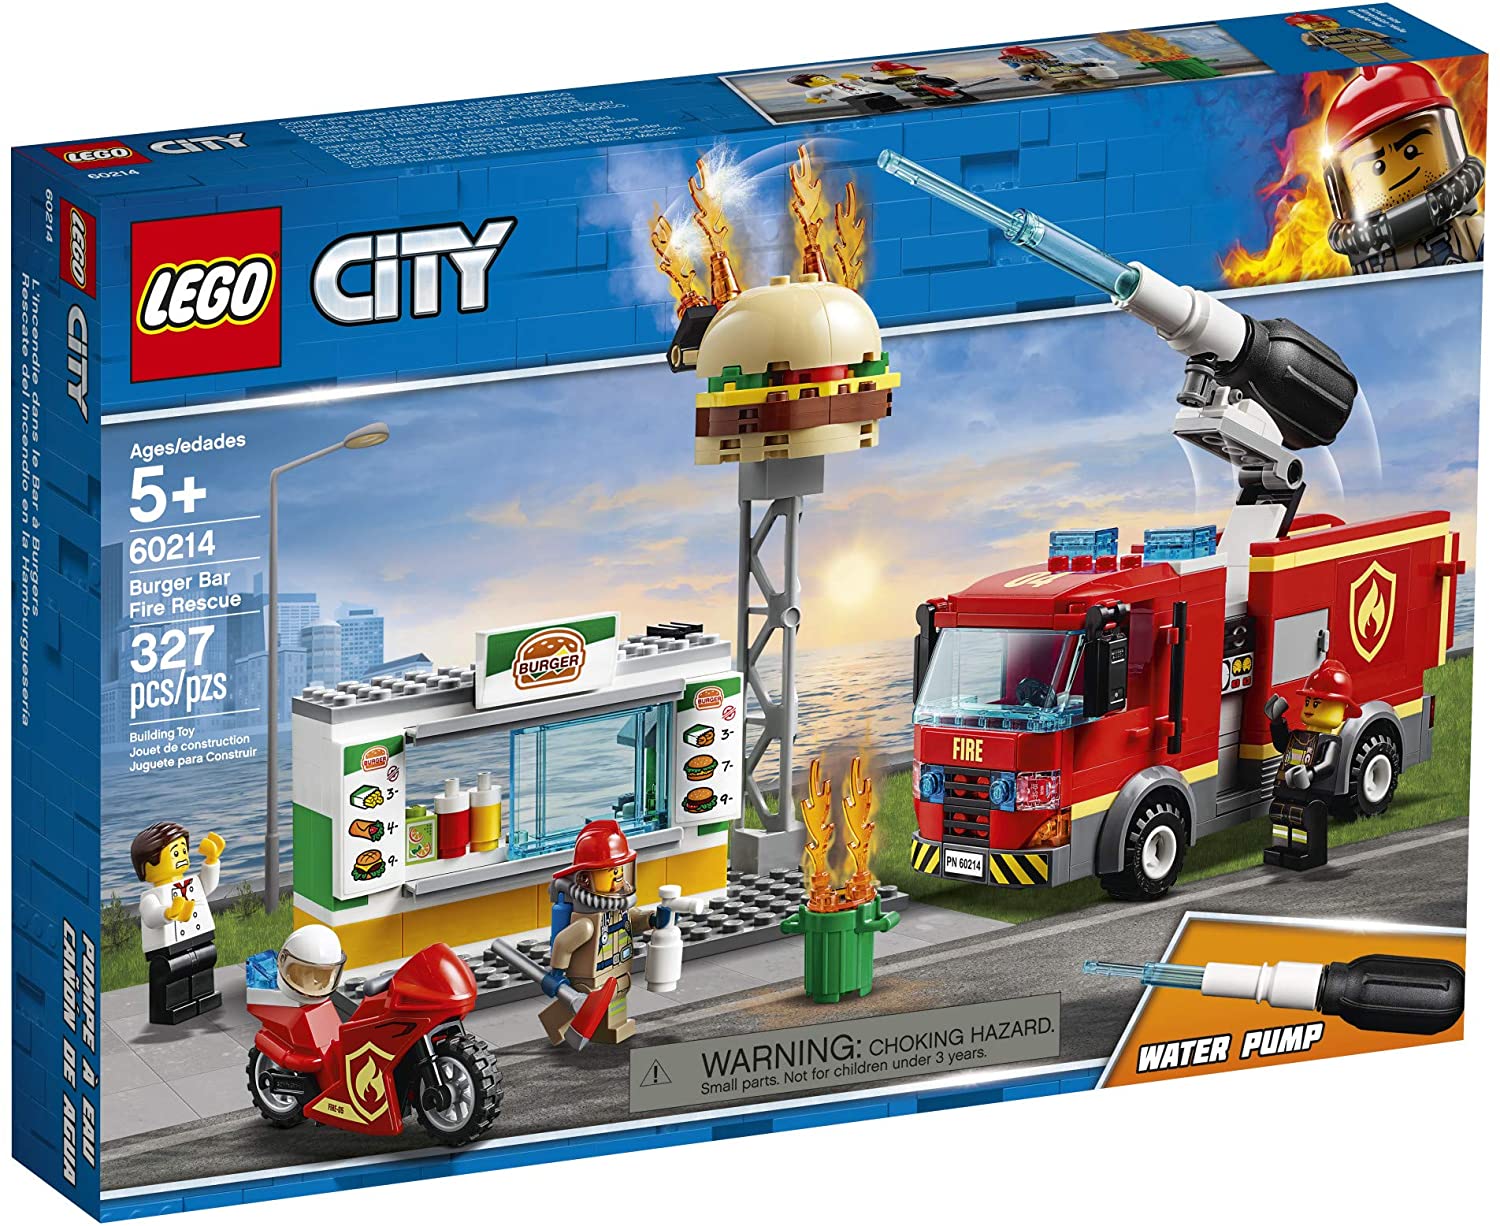 LEGO City Burger Bar Fire Rescue 60214 Building Kit (327 Pieces